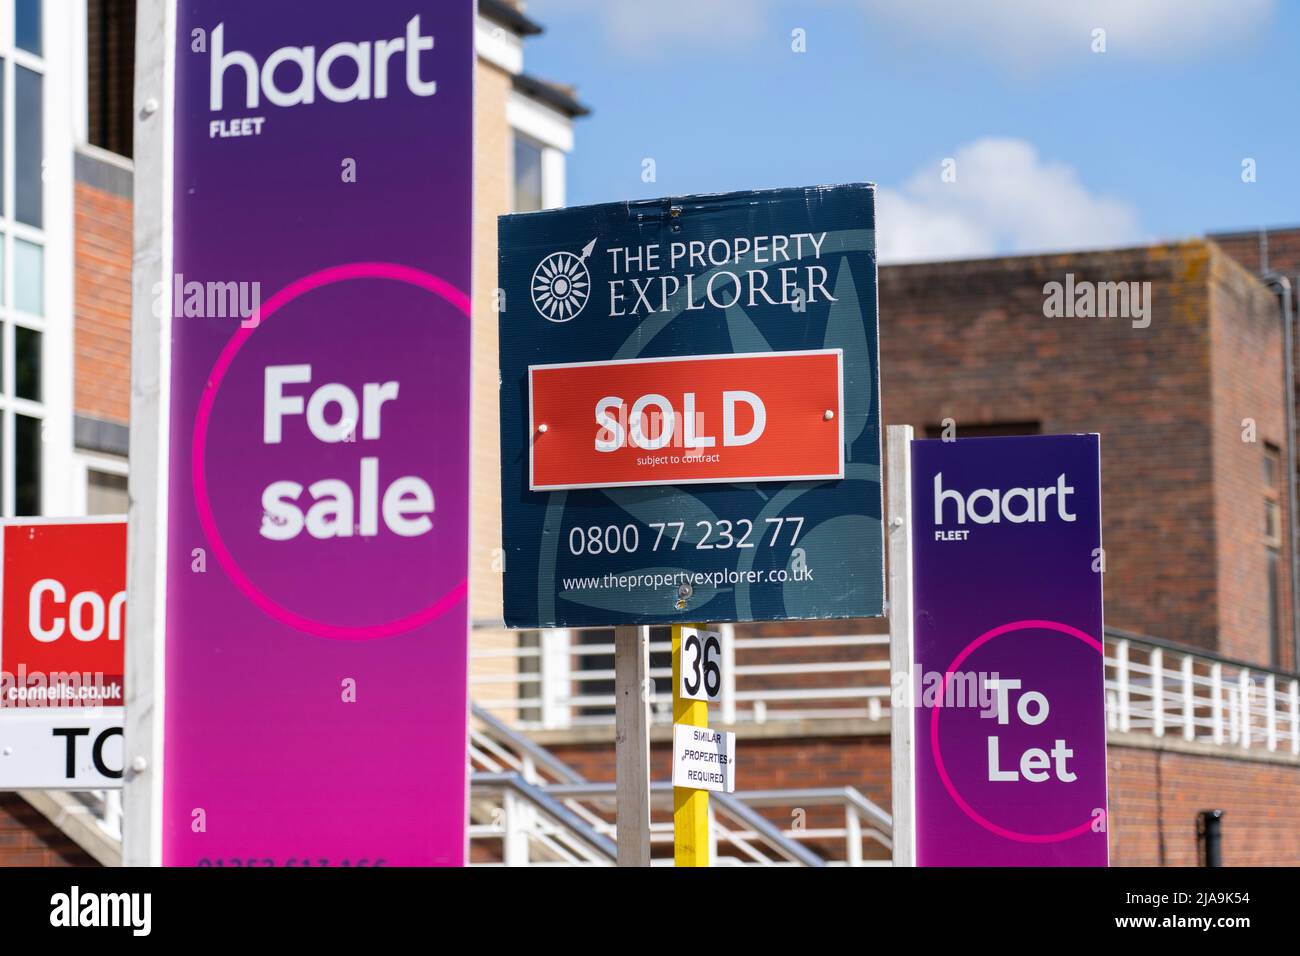 UK Immobilienmakler Zeichen zeigen Immobilien zum Verkauf und zu vermieten. Konzept - Absturz des Immobilienmarktes, durchschnittlicher britischer Immobilienpreis, Immobilienmarkt, fallende Preise Stockfoto